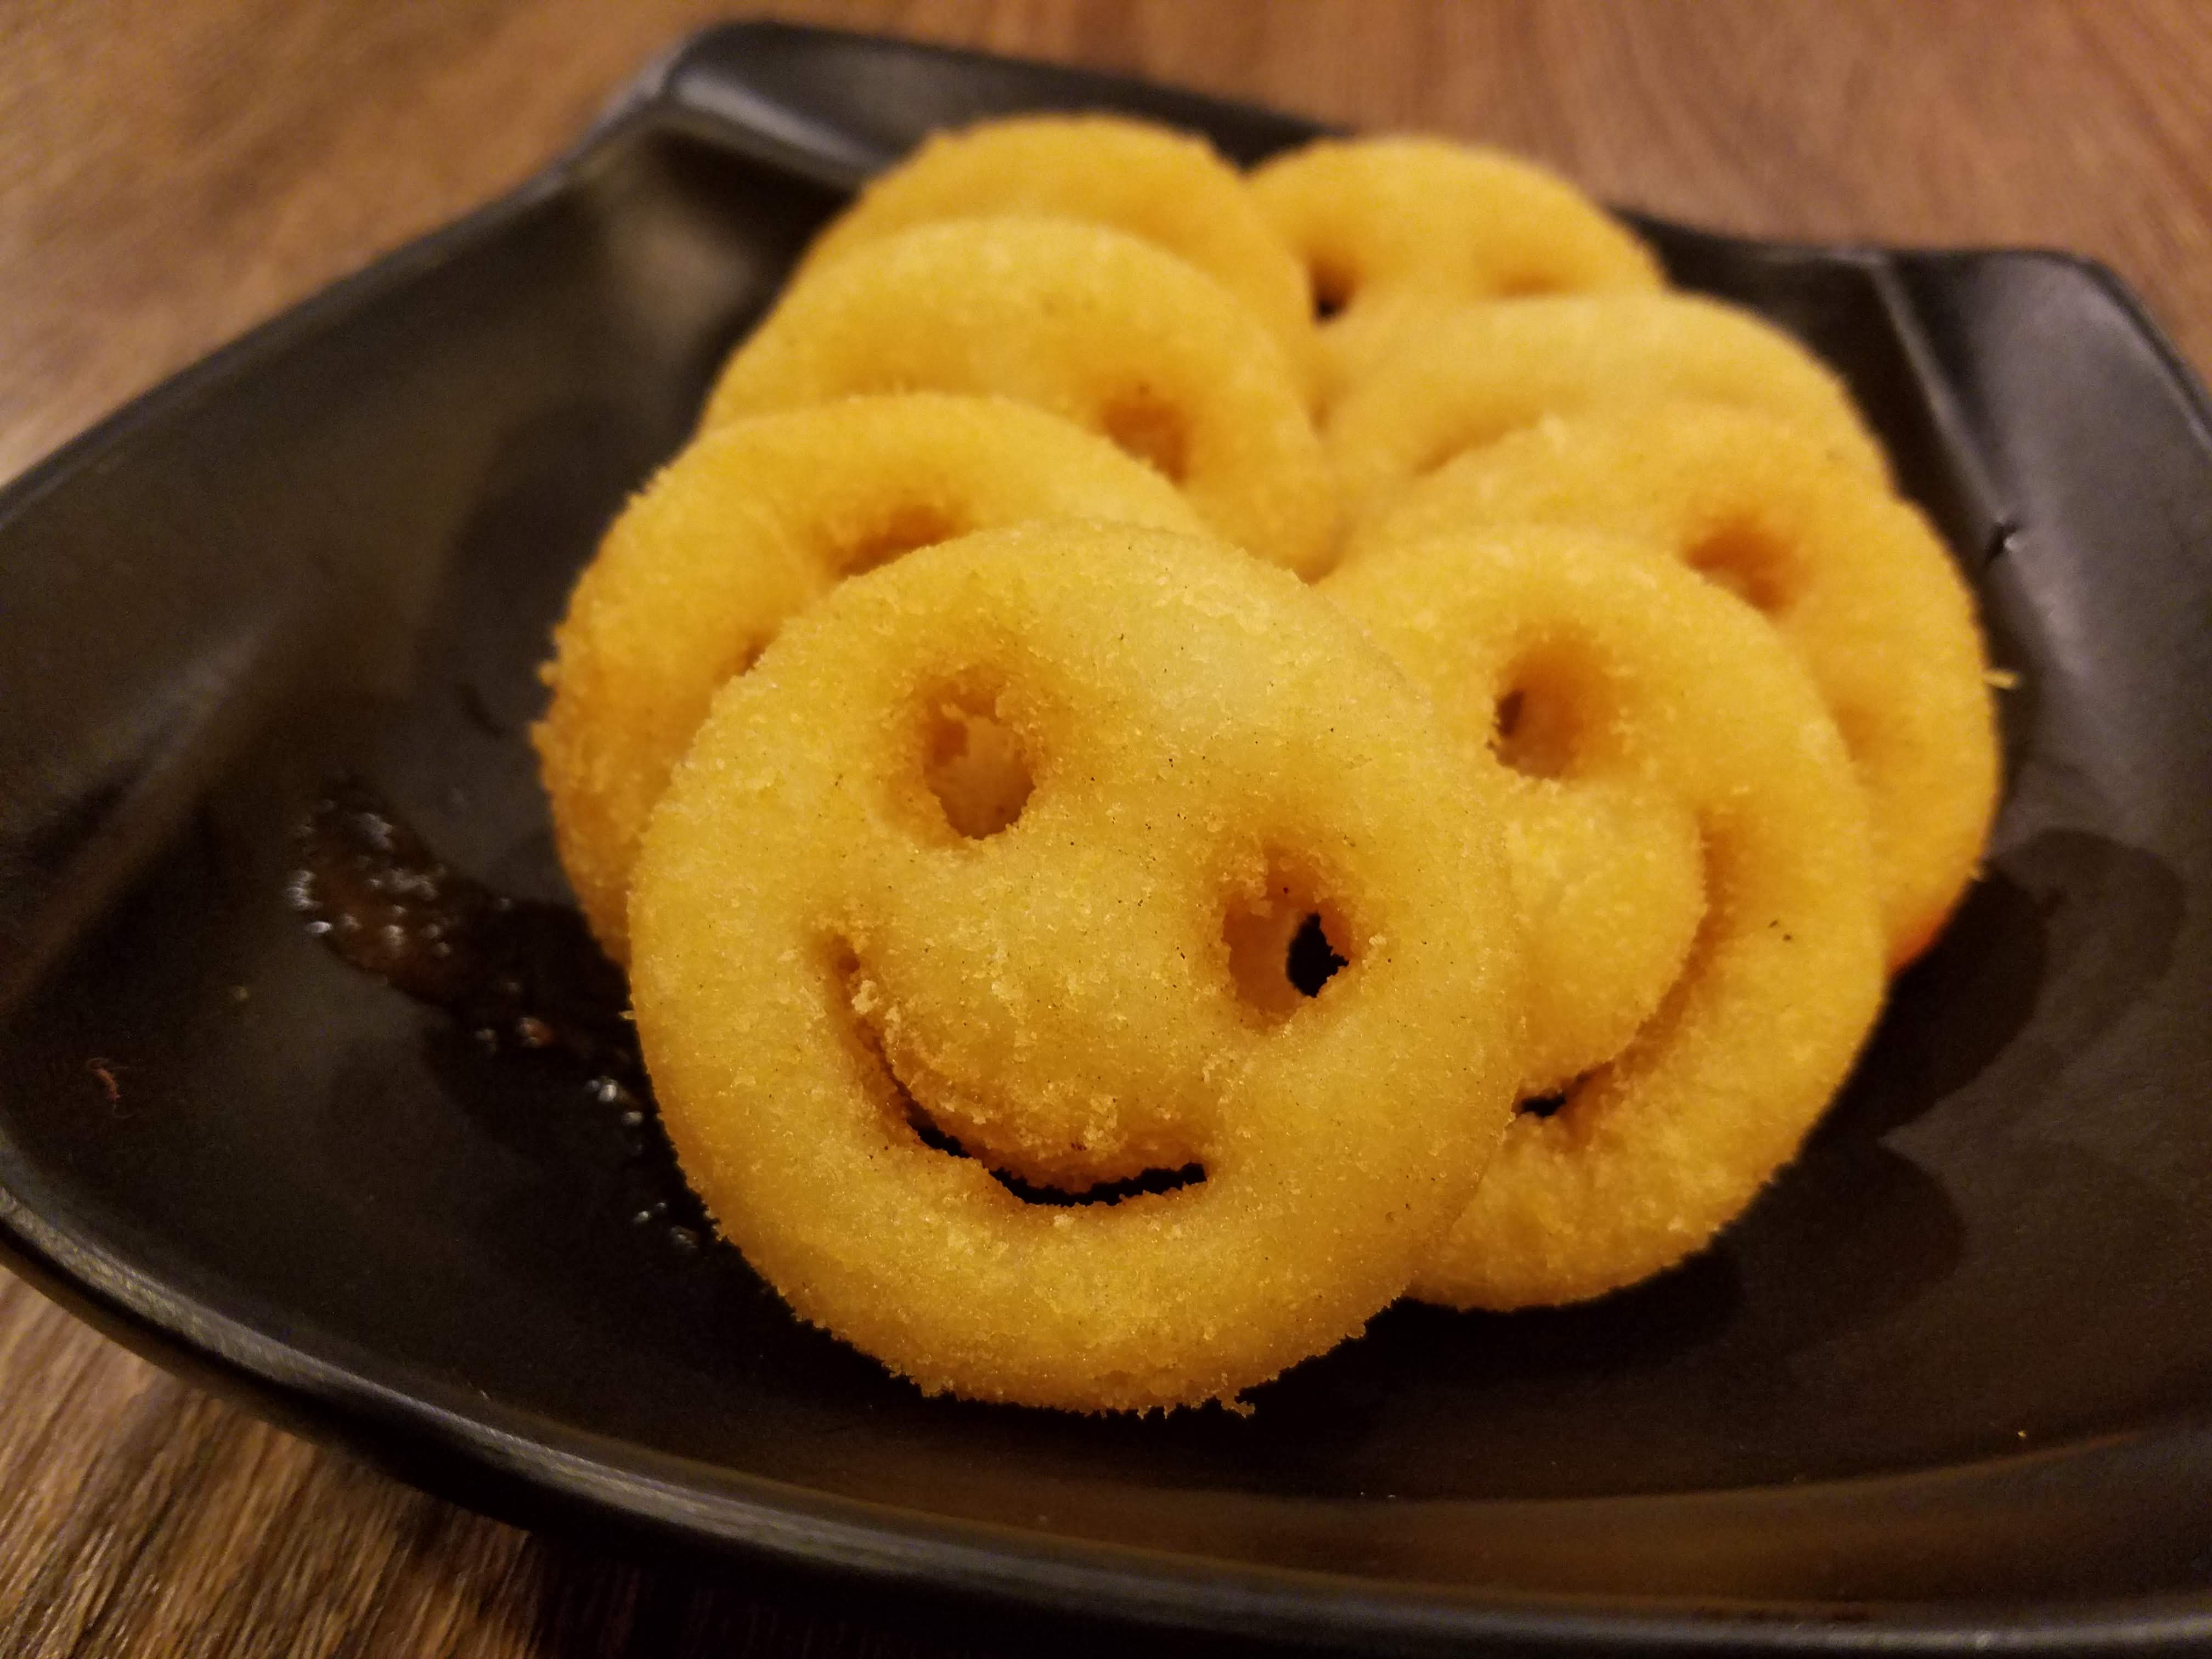 微笑薯餅 18入【利津食品行】點心 炸物 薯餅 氣炸鍋 冷凍食品